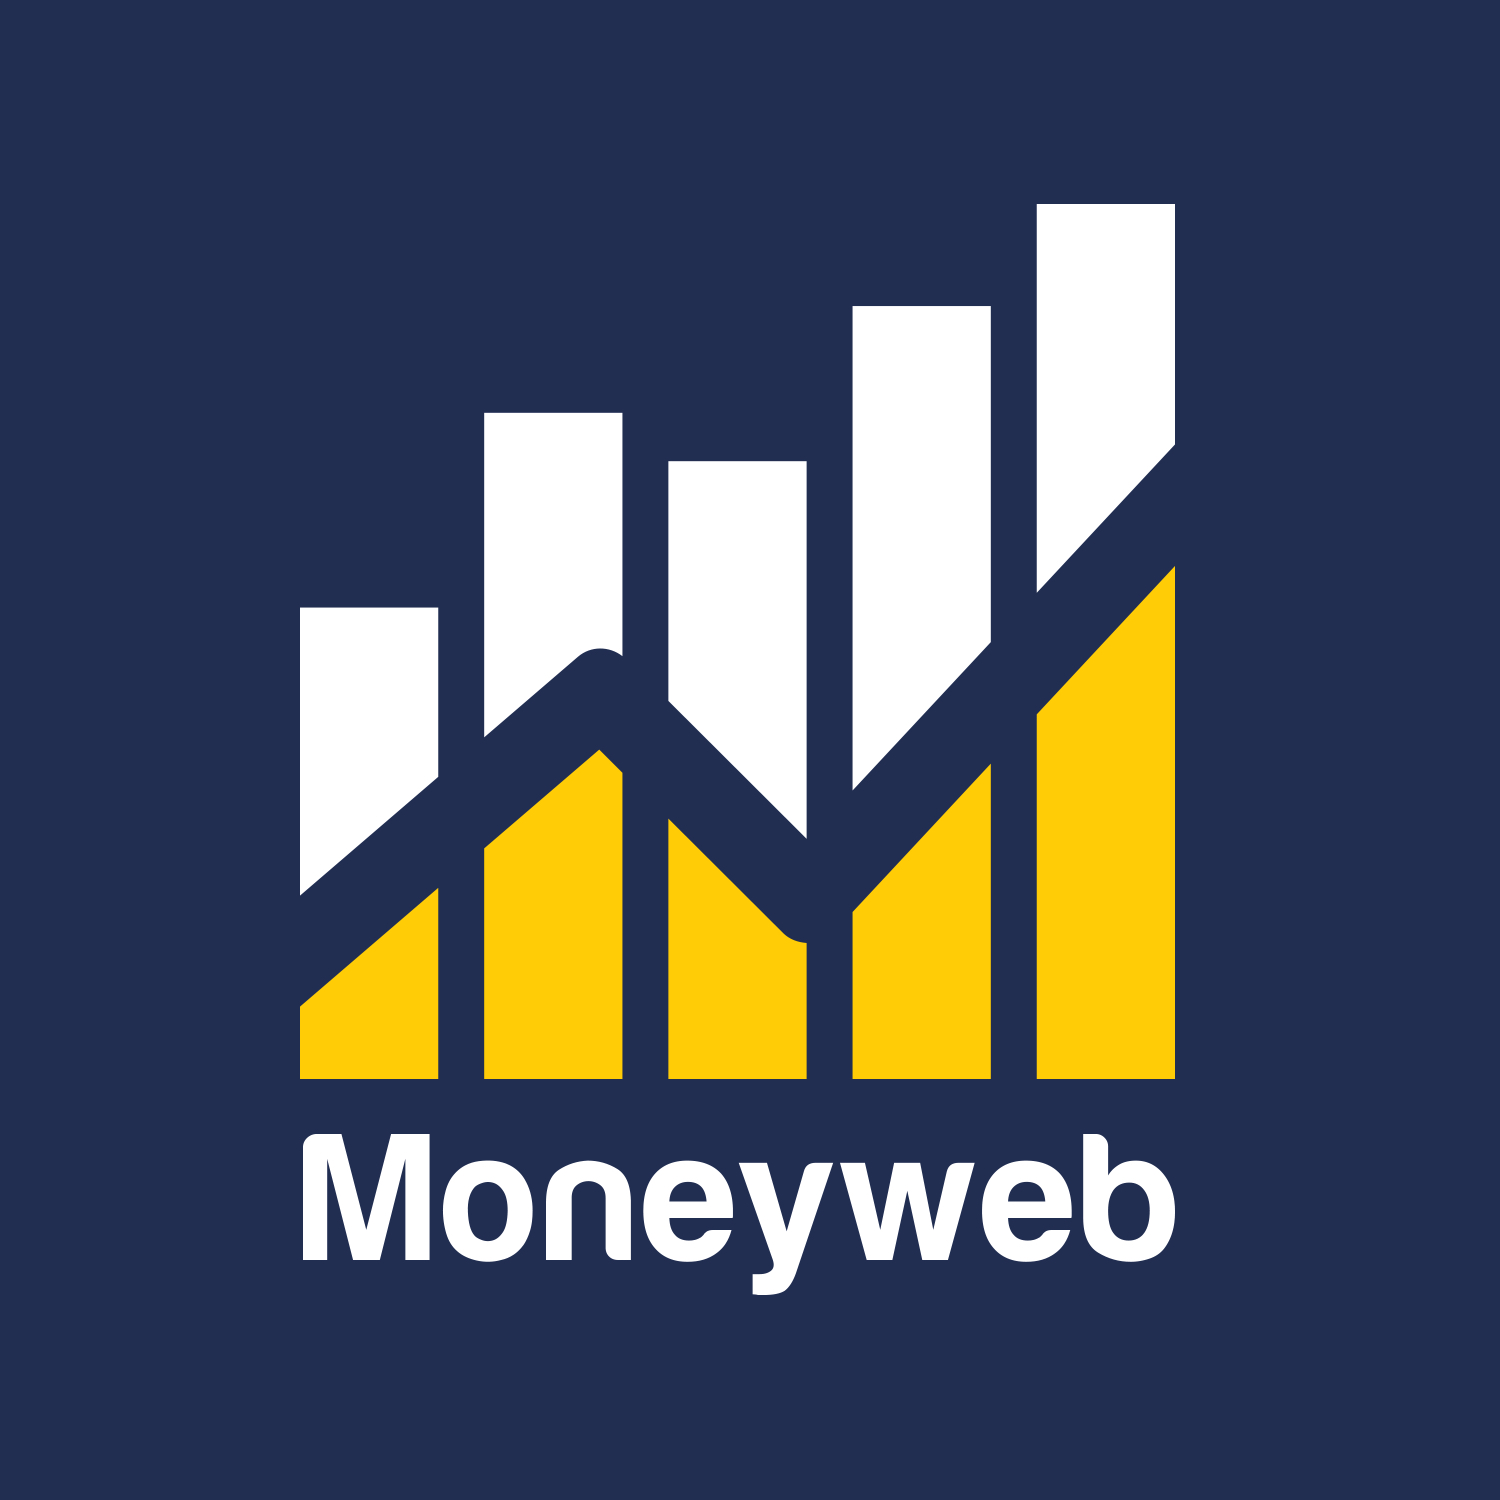 MoneyWeb | Grocery shop showdown